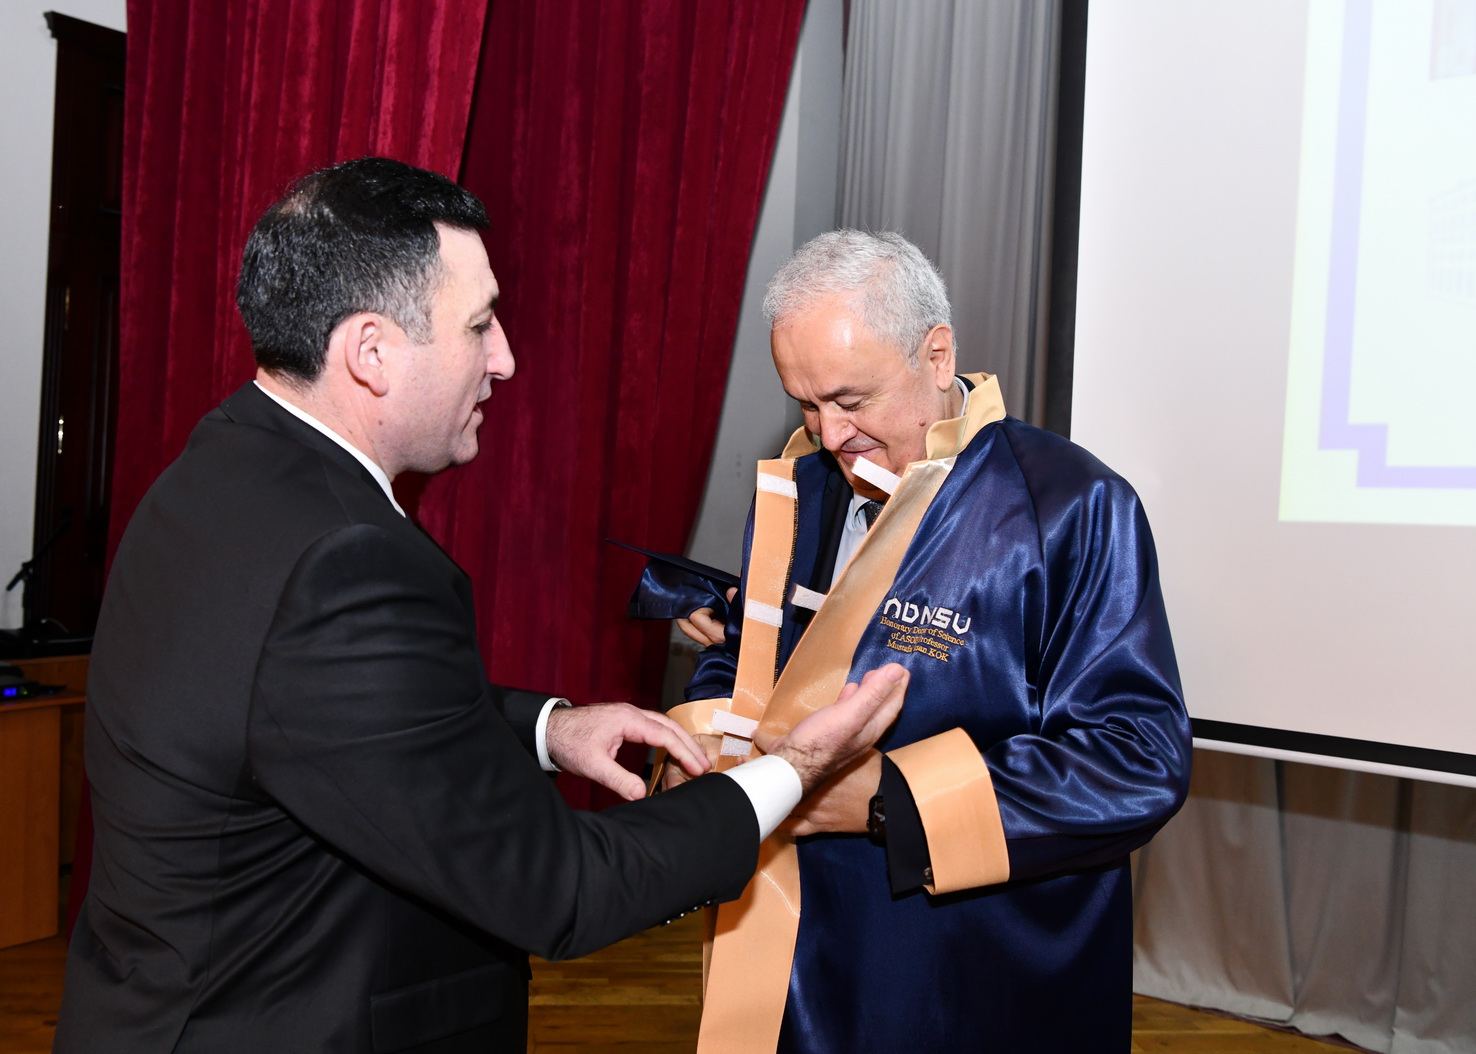 ODTU-nun rektoru, professor Mustafa Verşan Kökə ADNSU-nun Fəxri doktoru diplomu təqdim olunub (FOTO)